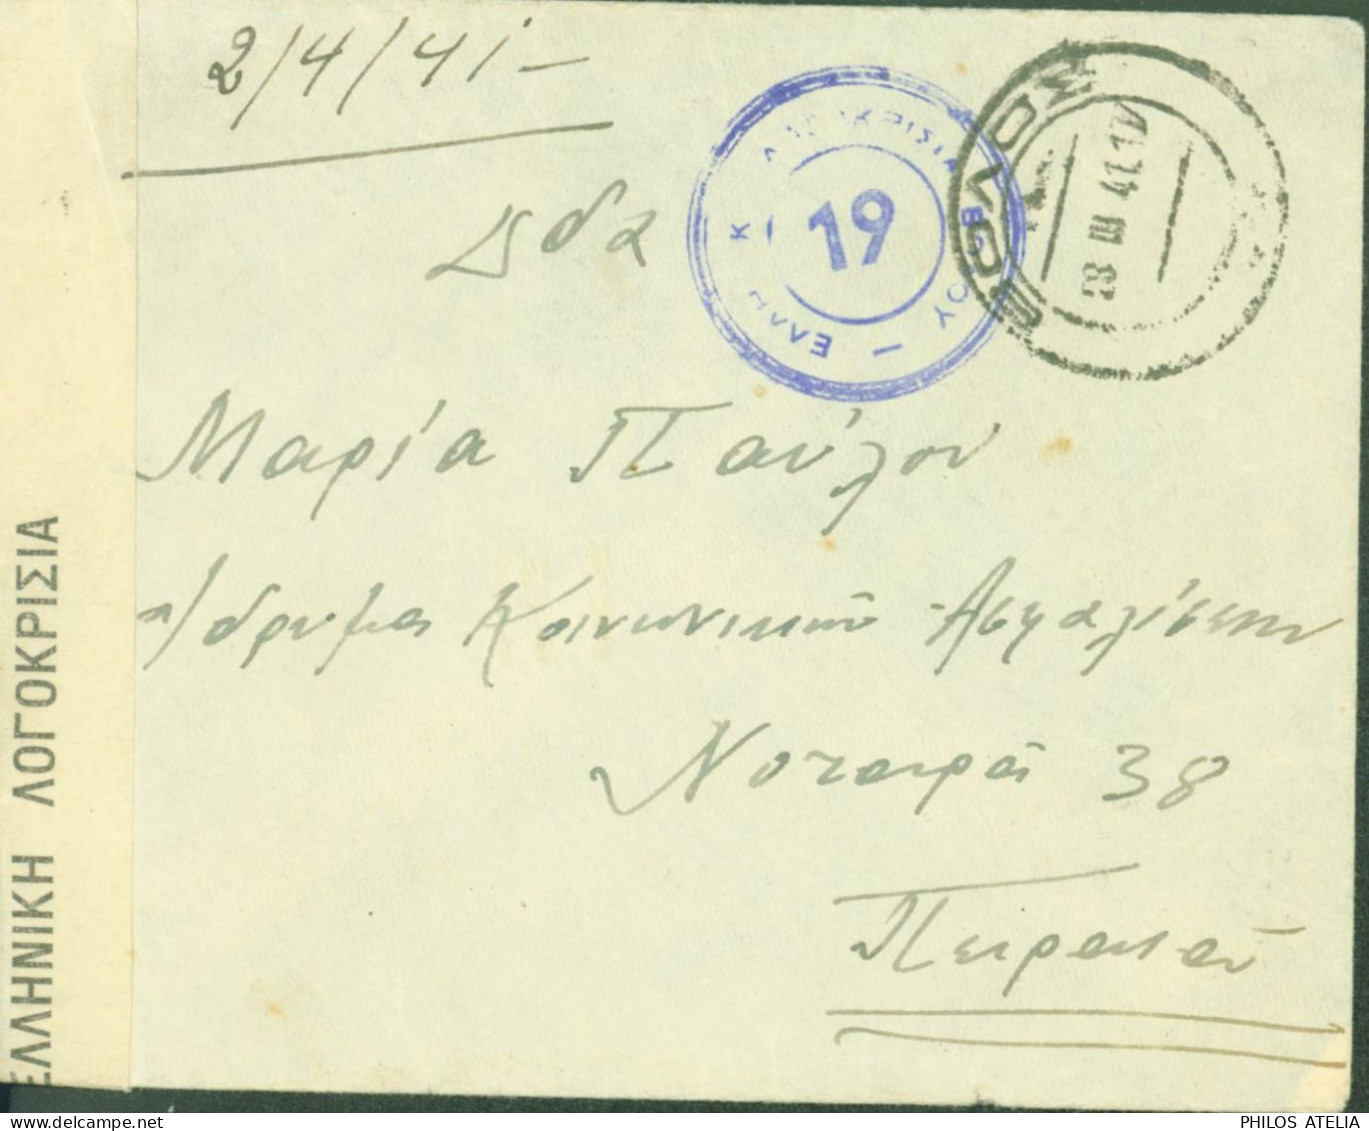 Grèce Guerre 40 Envoyée Au Service & Assistance Au Pirée Censure CAD Volos 19 III 1941 - Lettres & Documents